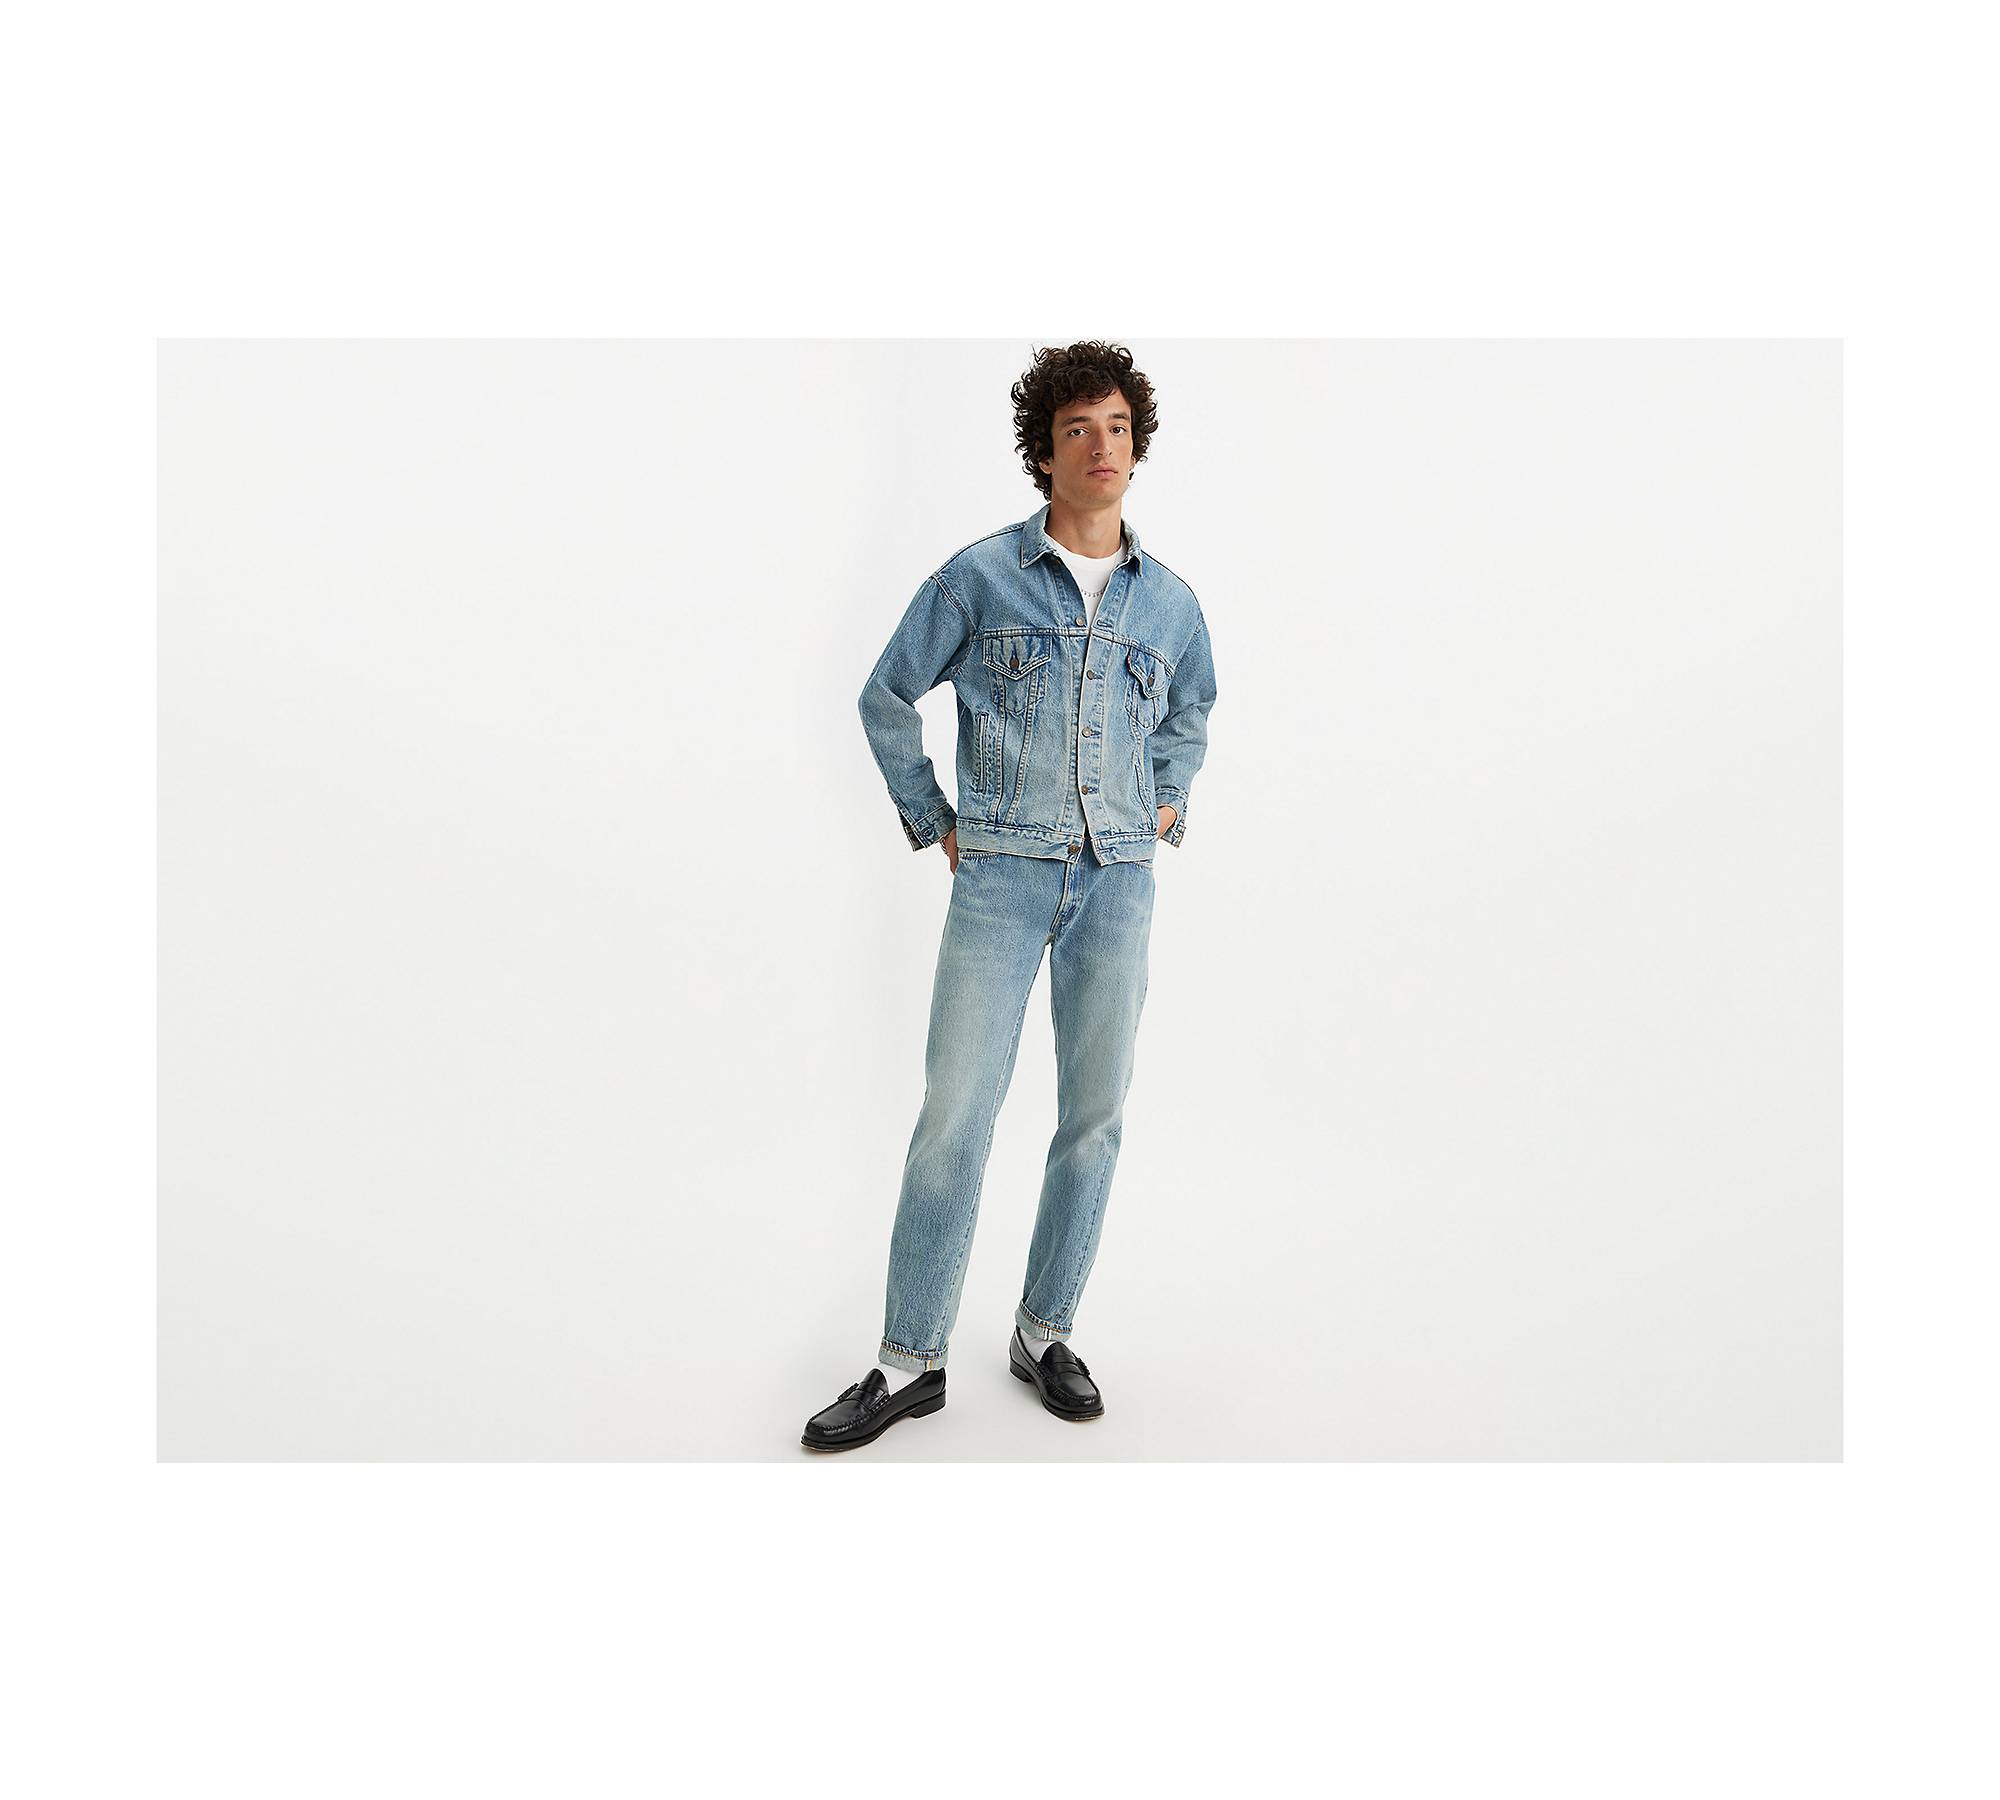 Levi's Vintage Clothing - 1954 501 Jeans - Men - Cotton - 29/32 - Blue